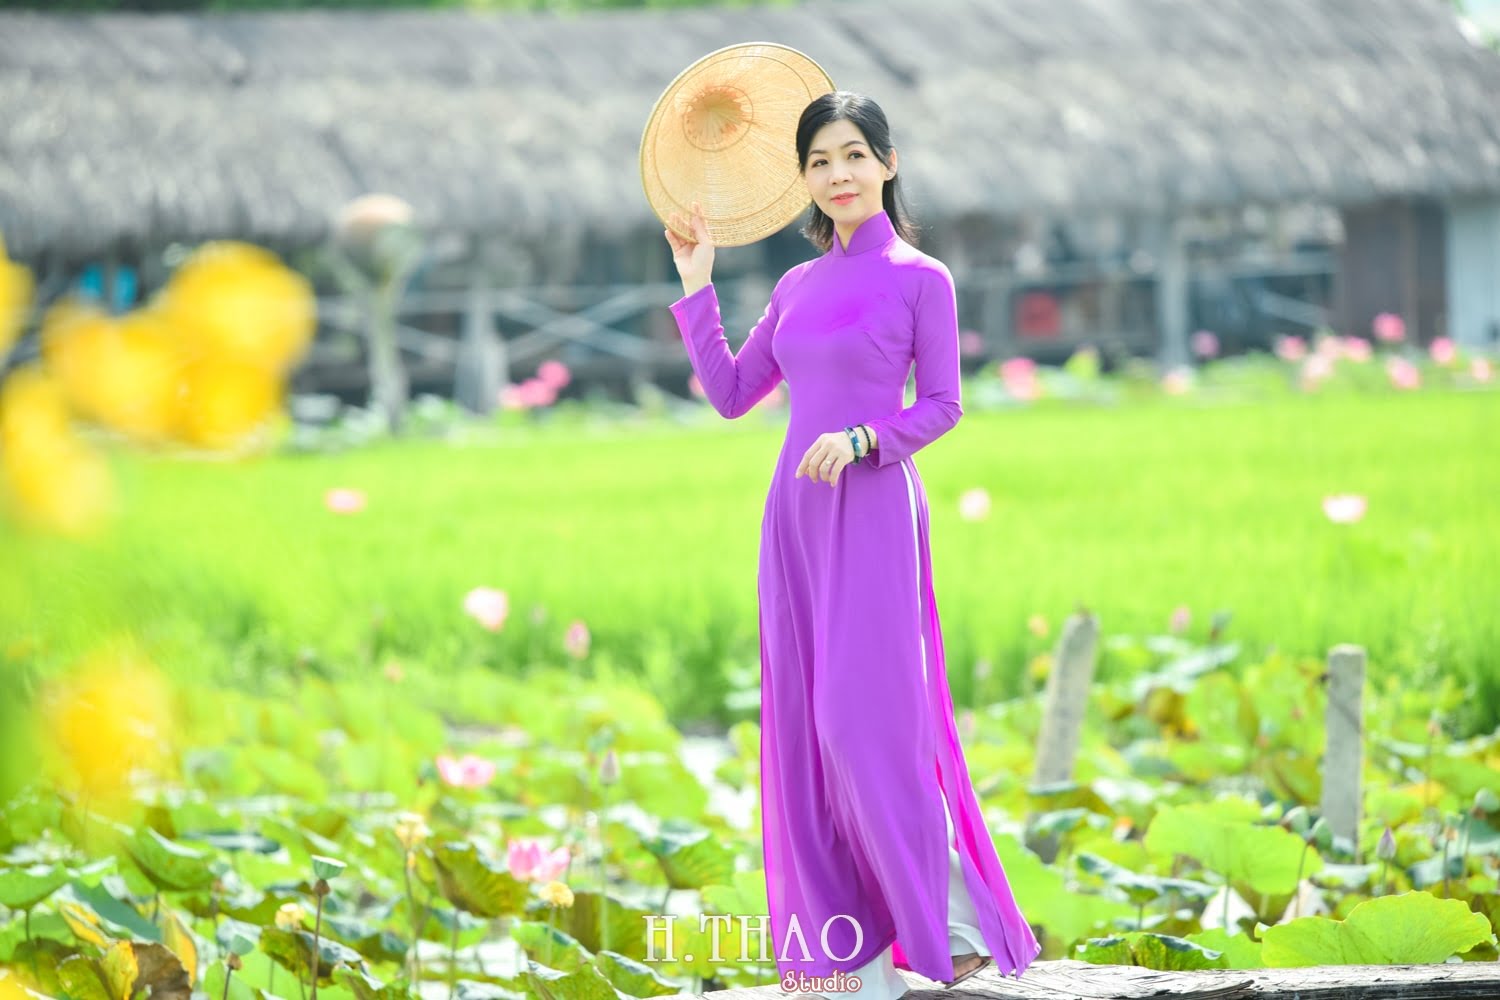 Anh Hoa sen 24 min - Album ảnh concept đồng quê Việt Nam tuyệt đẹp- HThao Studio